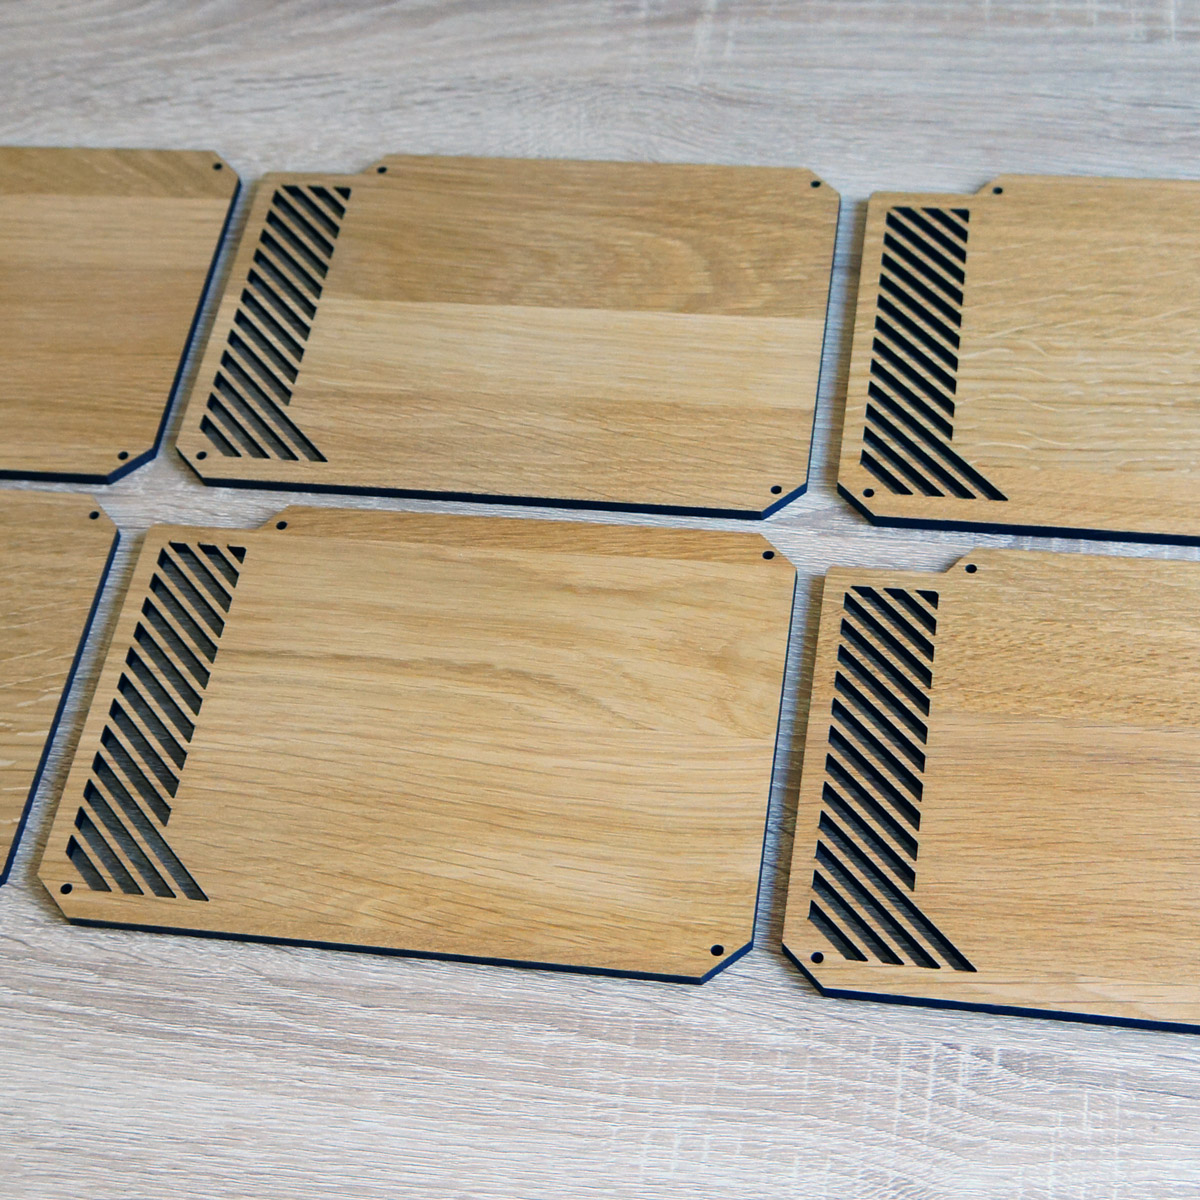 Lazer3D - Lazer3D LZ7 Front Panel - Solid Wood Oak